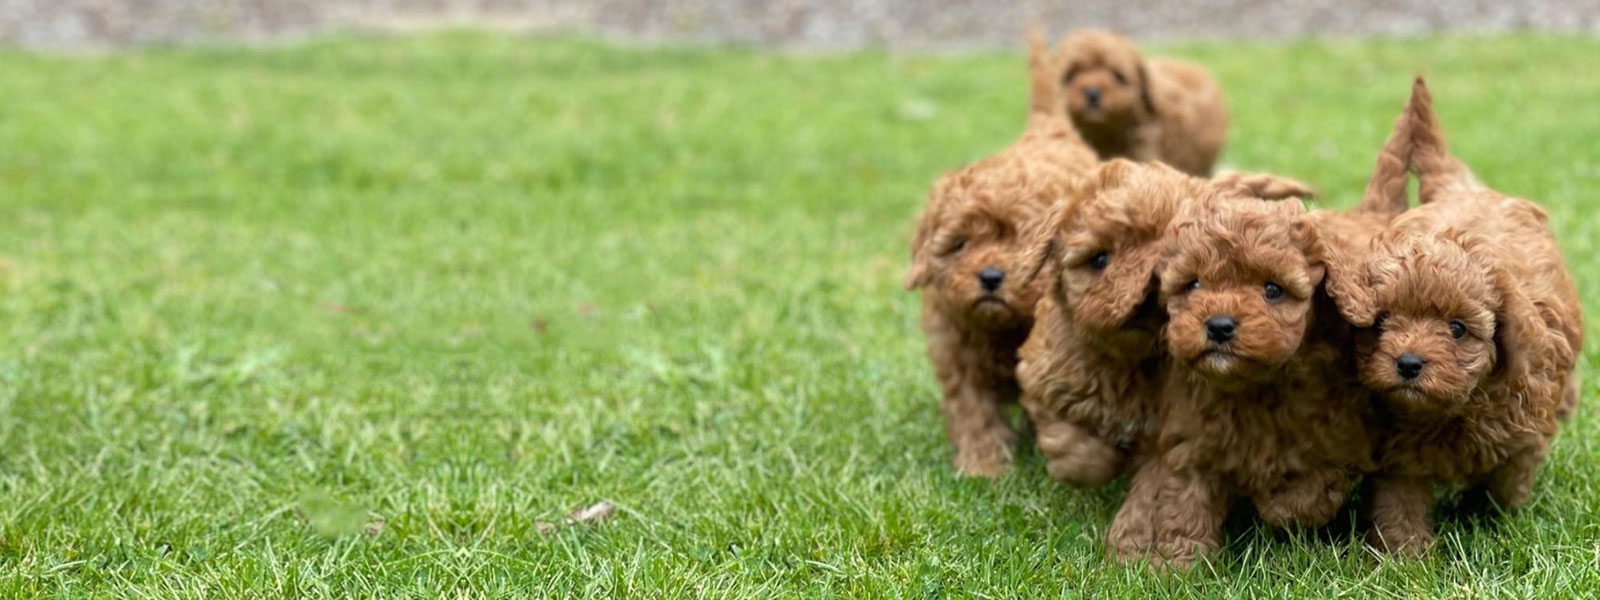 Cavoodle Puppies for Sale Melbourne